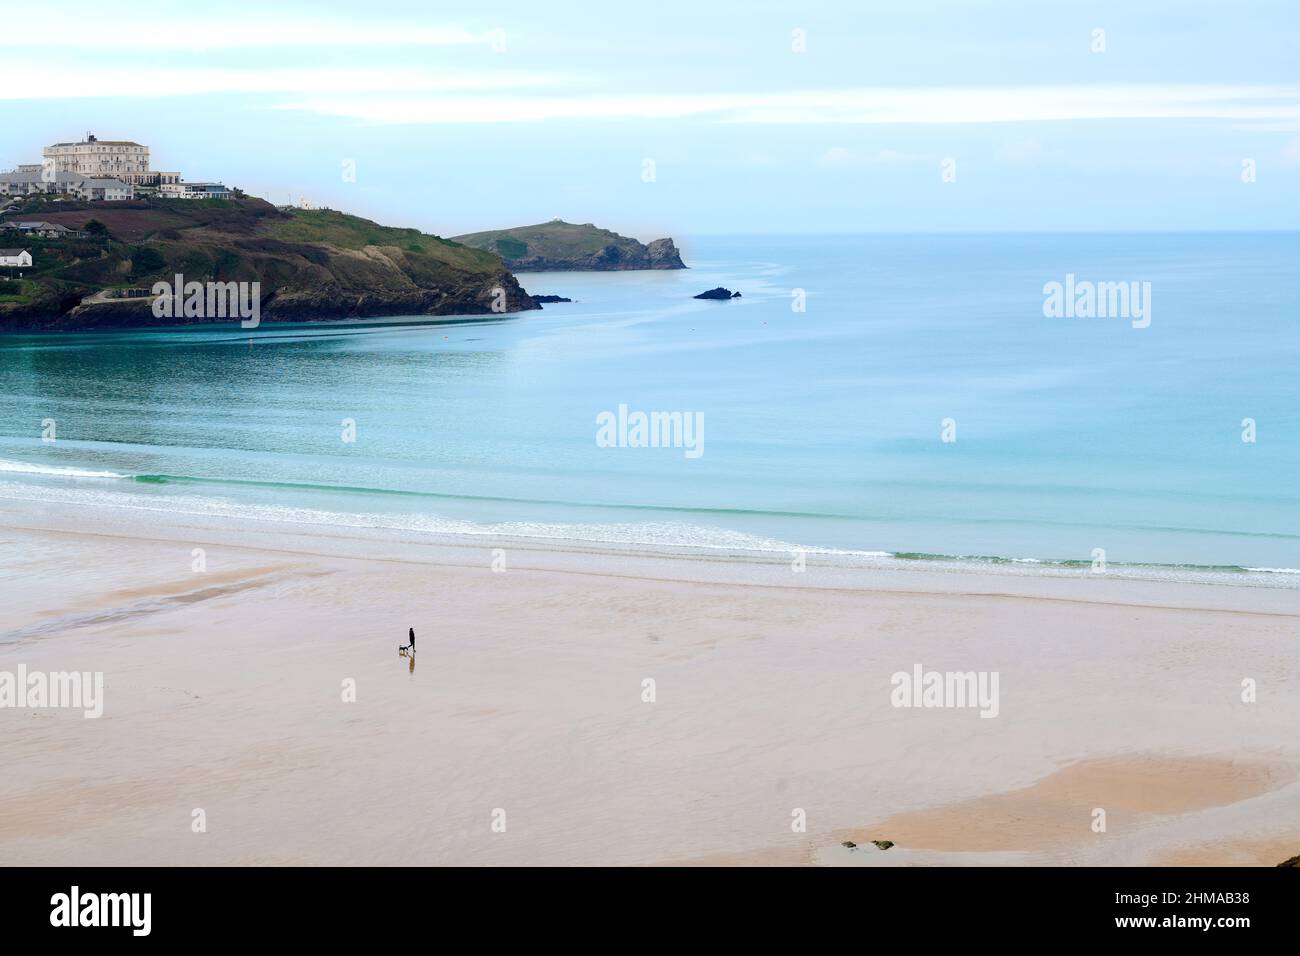 Une personne seule visible sur une plage Great Western autrement vide à Newquay, en Cornouailles, en Angleterre, un jour d'hiver avec peu de surf. Banque D'Images